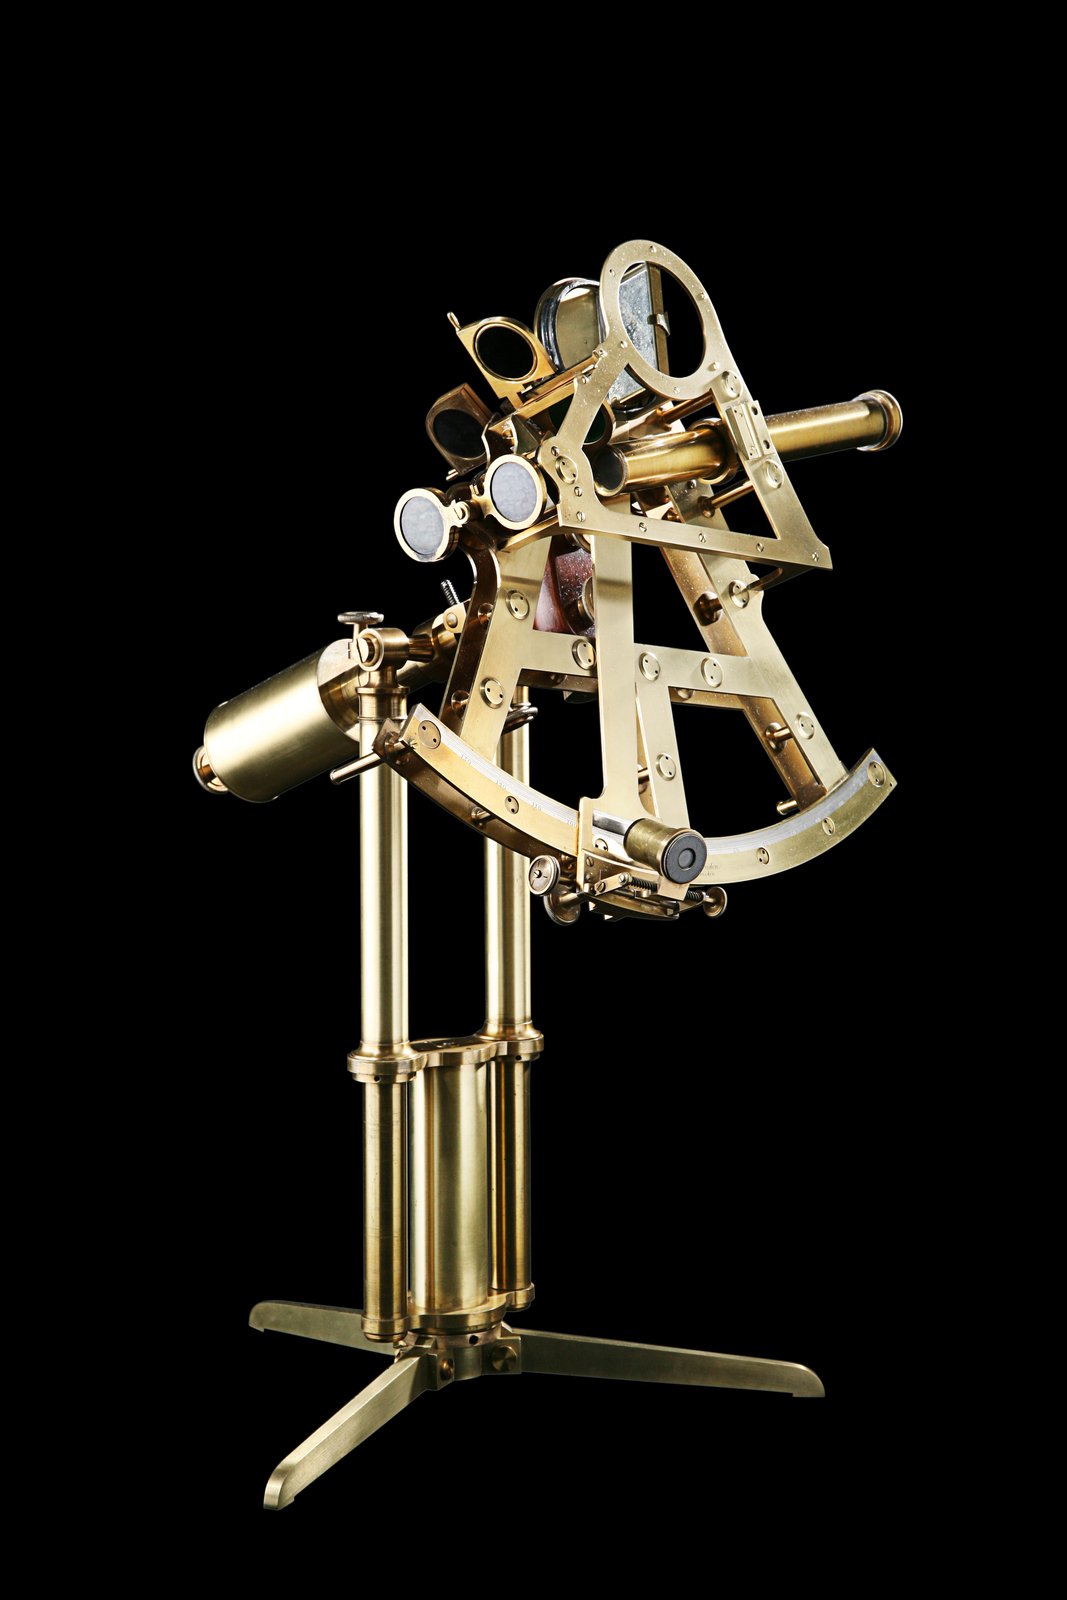 Neobvyklý zrcadlový sextant uložený ve stativu a s třínožkou císaře Napoleona sestrojil v Londýně mechanik Matthew Berge kolem roku 1800.